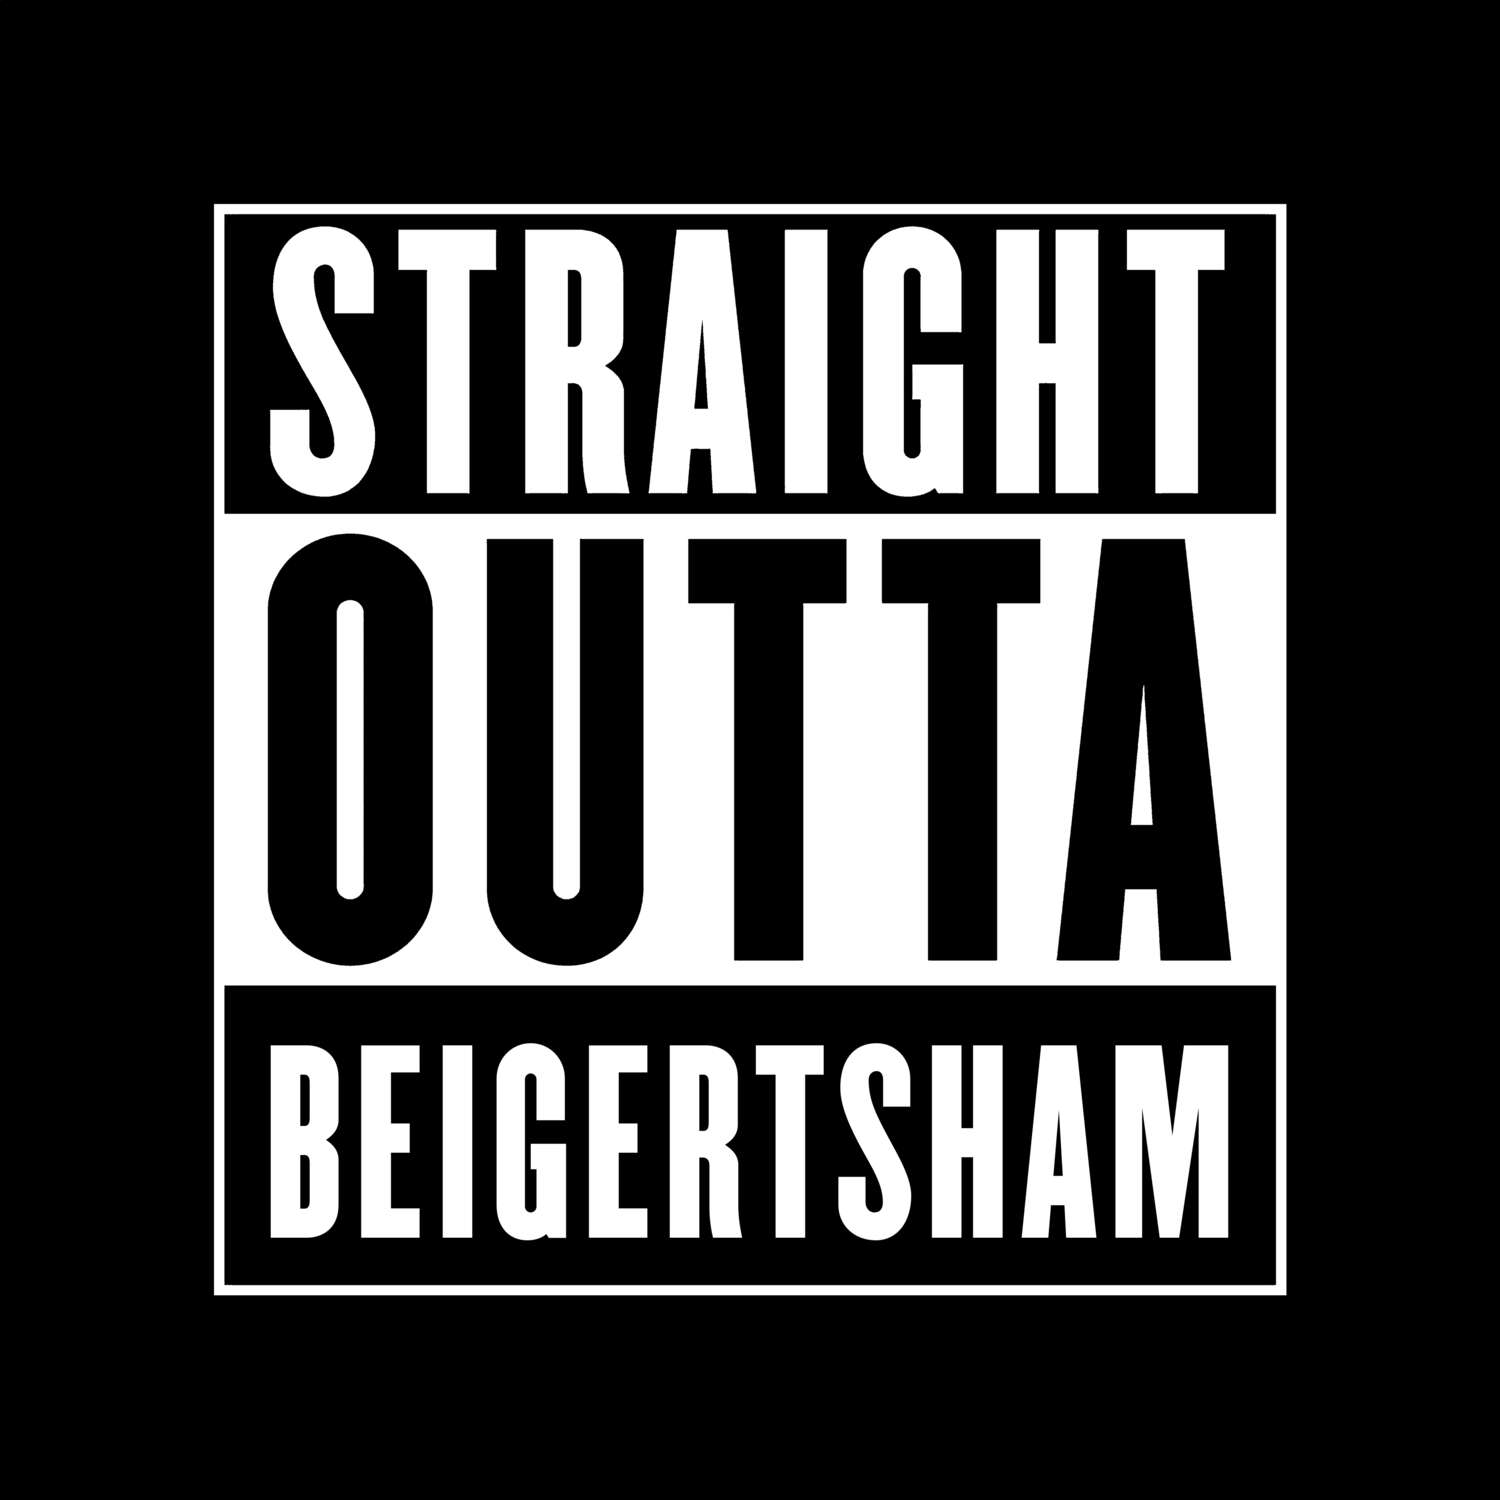 Beigertsham T-Shirt »Straight Outta«